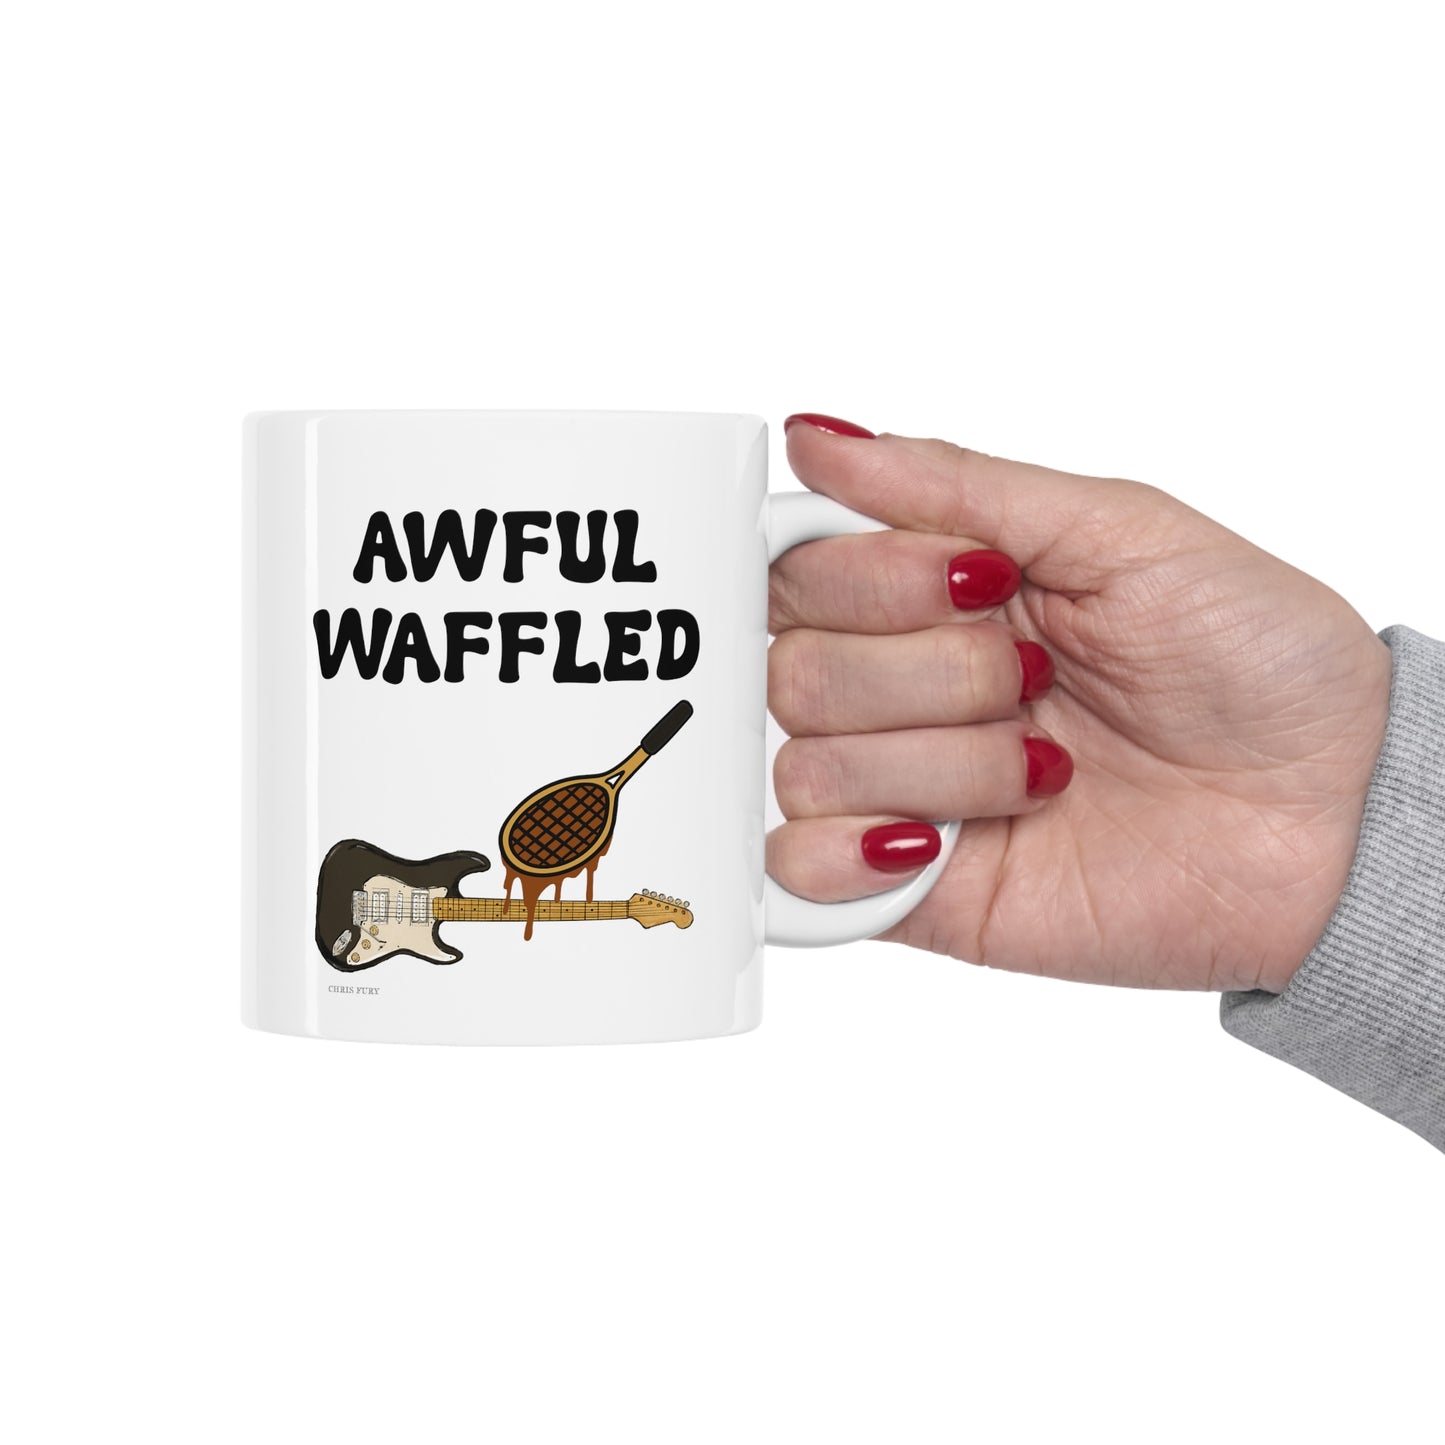 Awful Waffled Mug